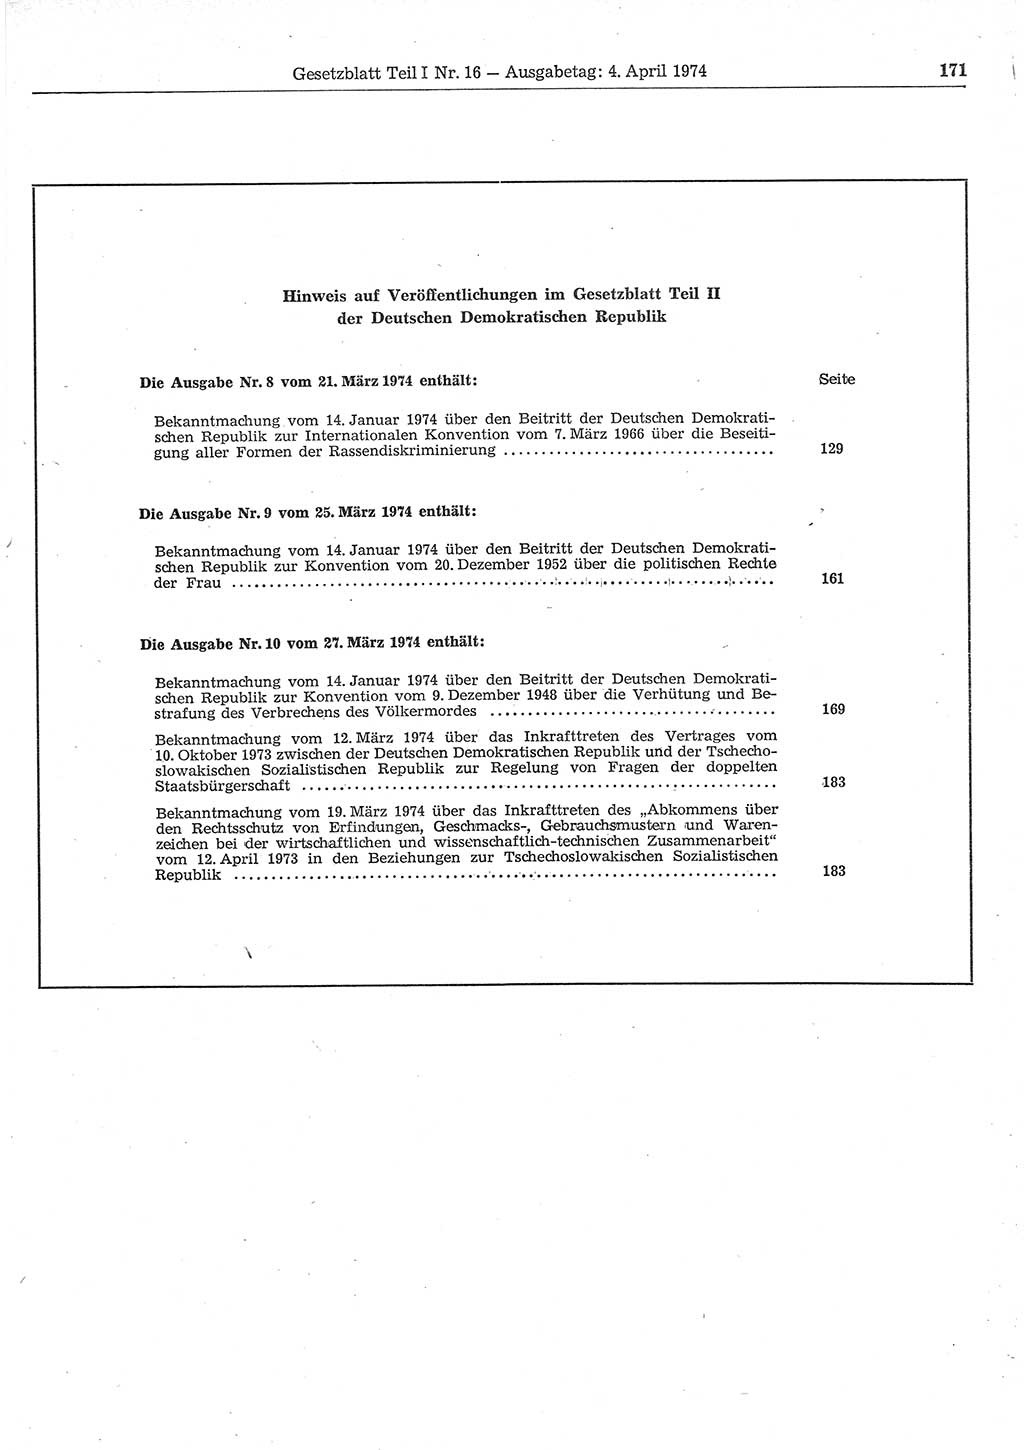 Gesetzblatt (GBl.) der Deutschen Demokratischen Republik (DDR) Teil Ⅰ 1974, Seite 171 (GBl. DDR Ⅰ 1974, S. 171)